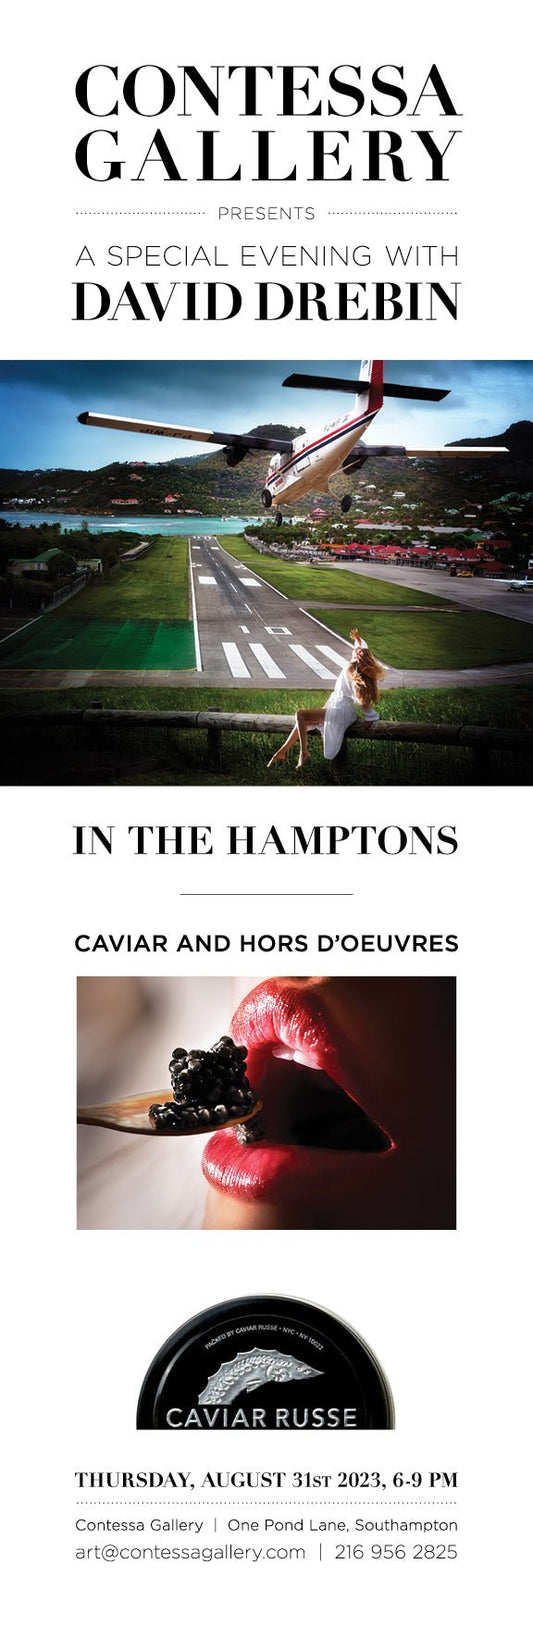 Caviar Russe, Art, The Hamptons! - Caviar Russe